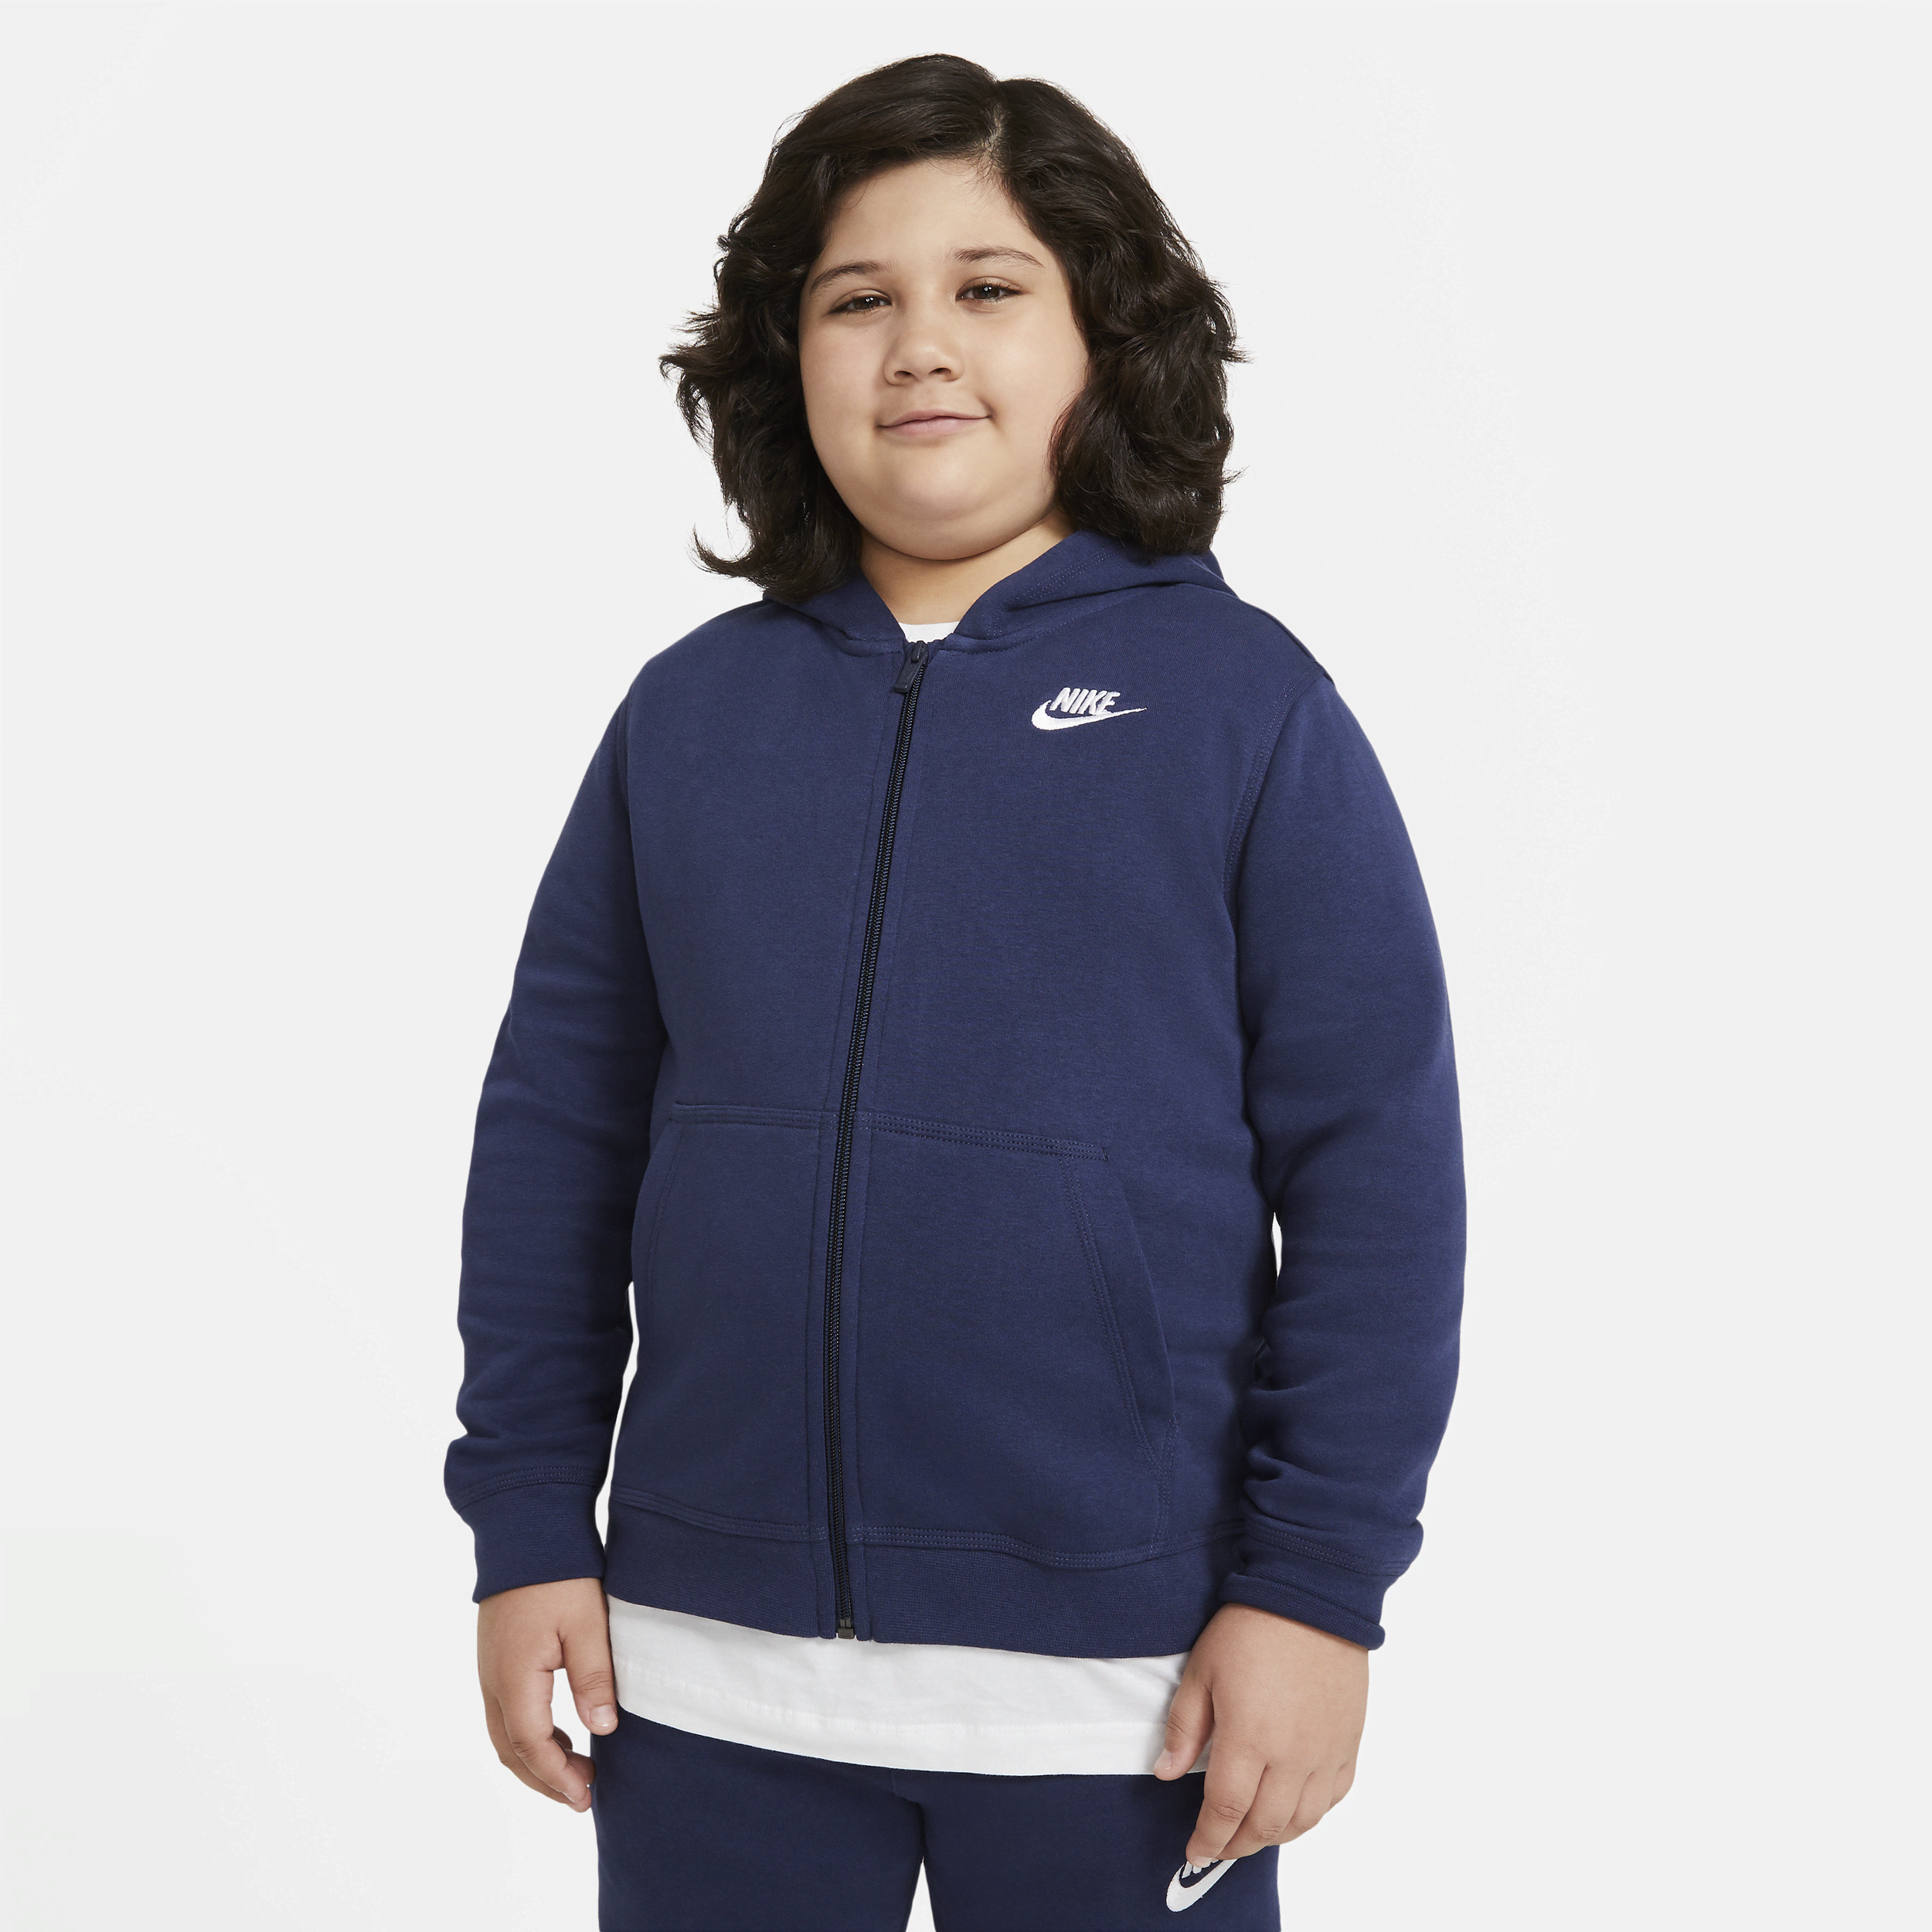 Bluza z kapturem i zamkiem na całej długości dla dużych dzieci (chłopców) Nike Sportswear Club Fleece (szersze rozmiary) - Niebieski